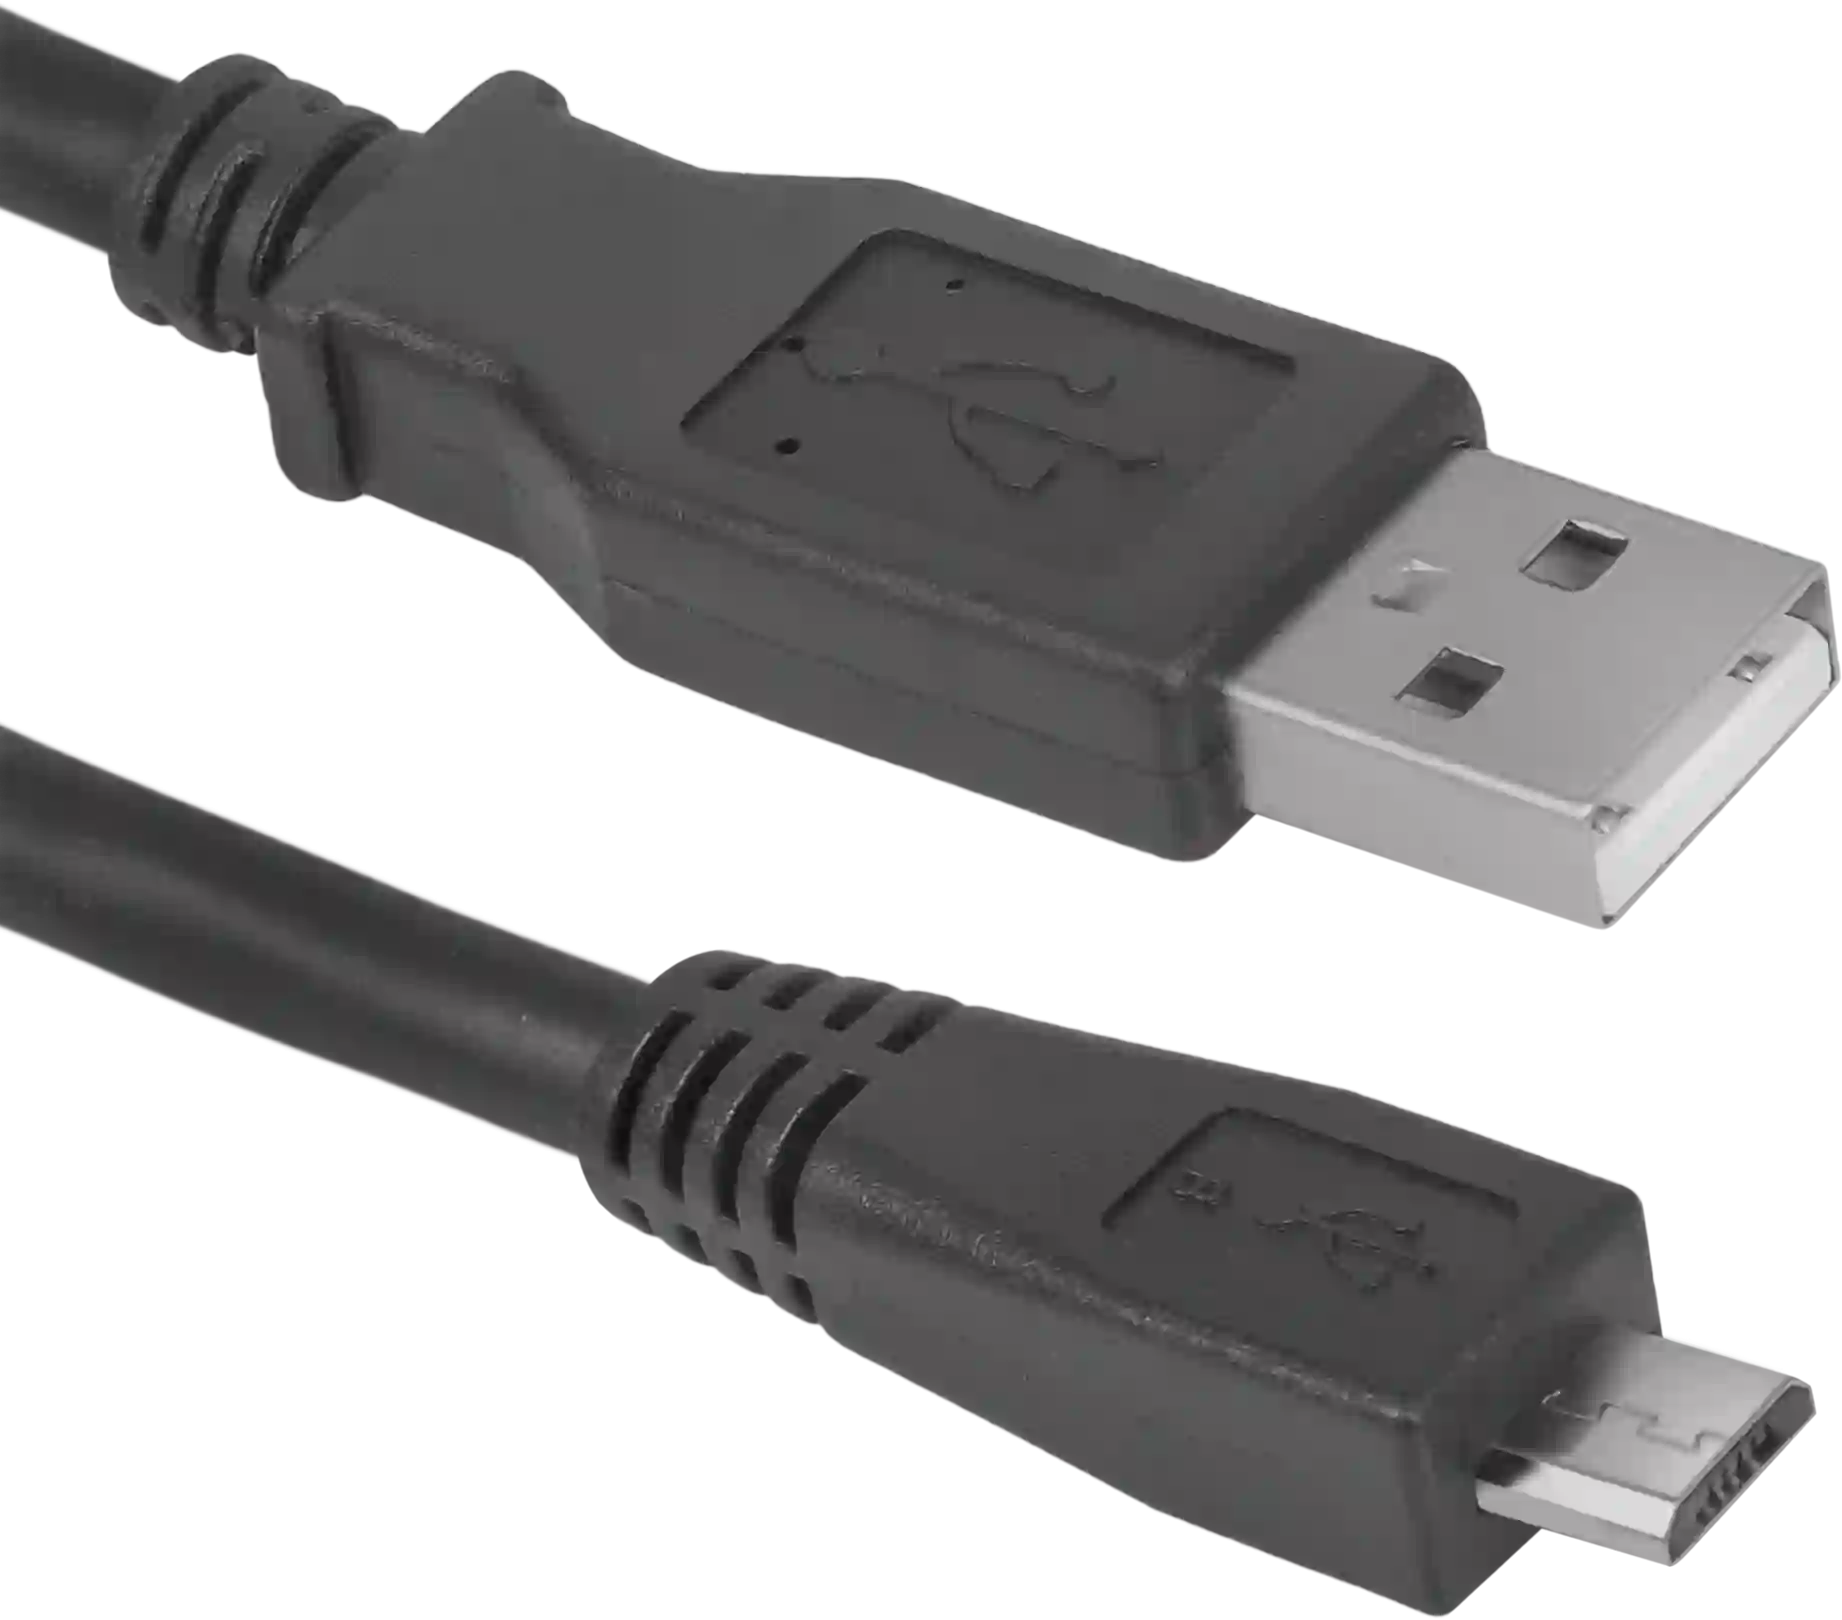 Сетевое зарядное устройство DEFENDER UPC-11 1xUSB (83556)